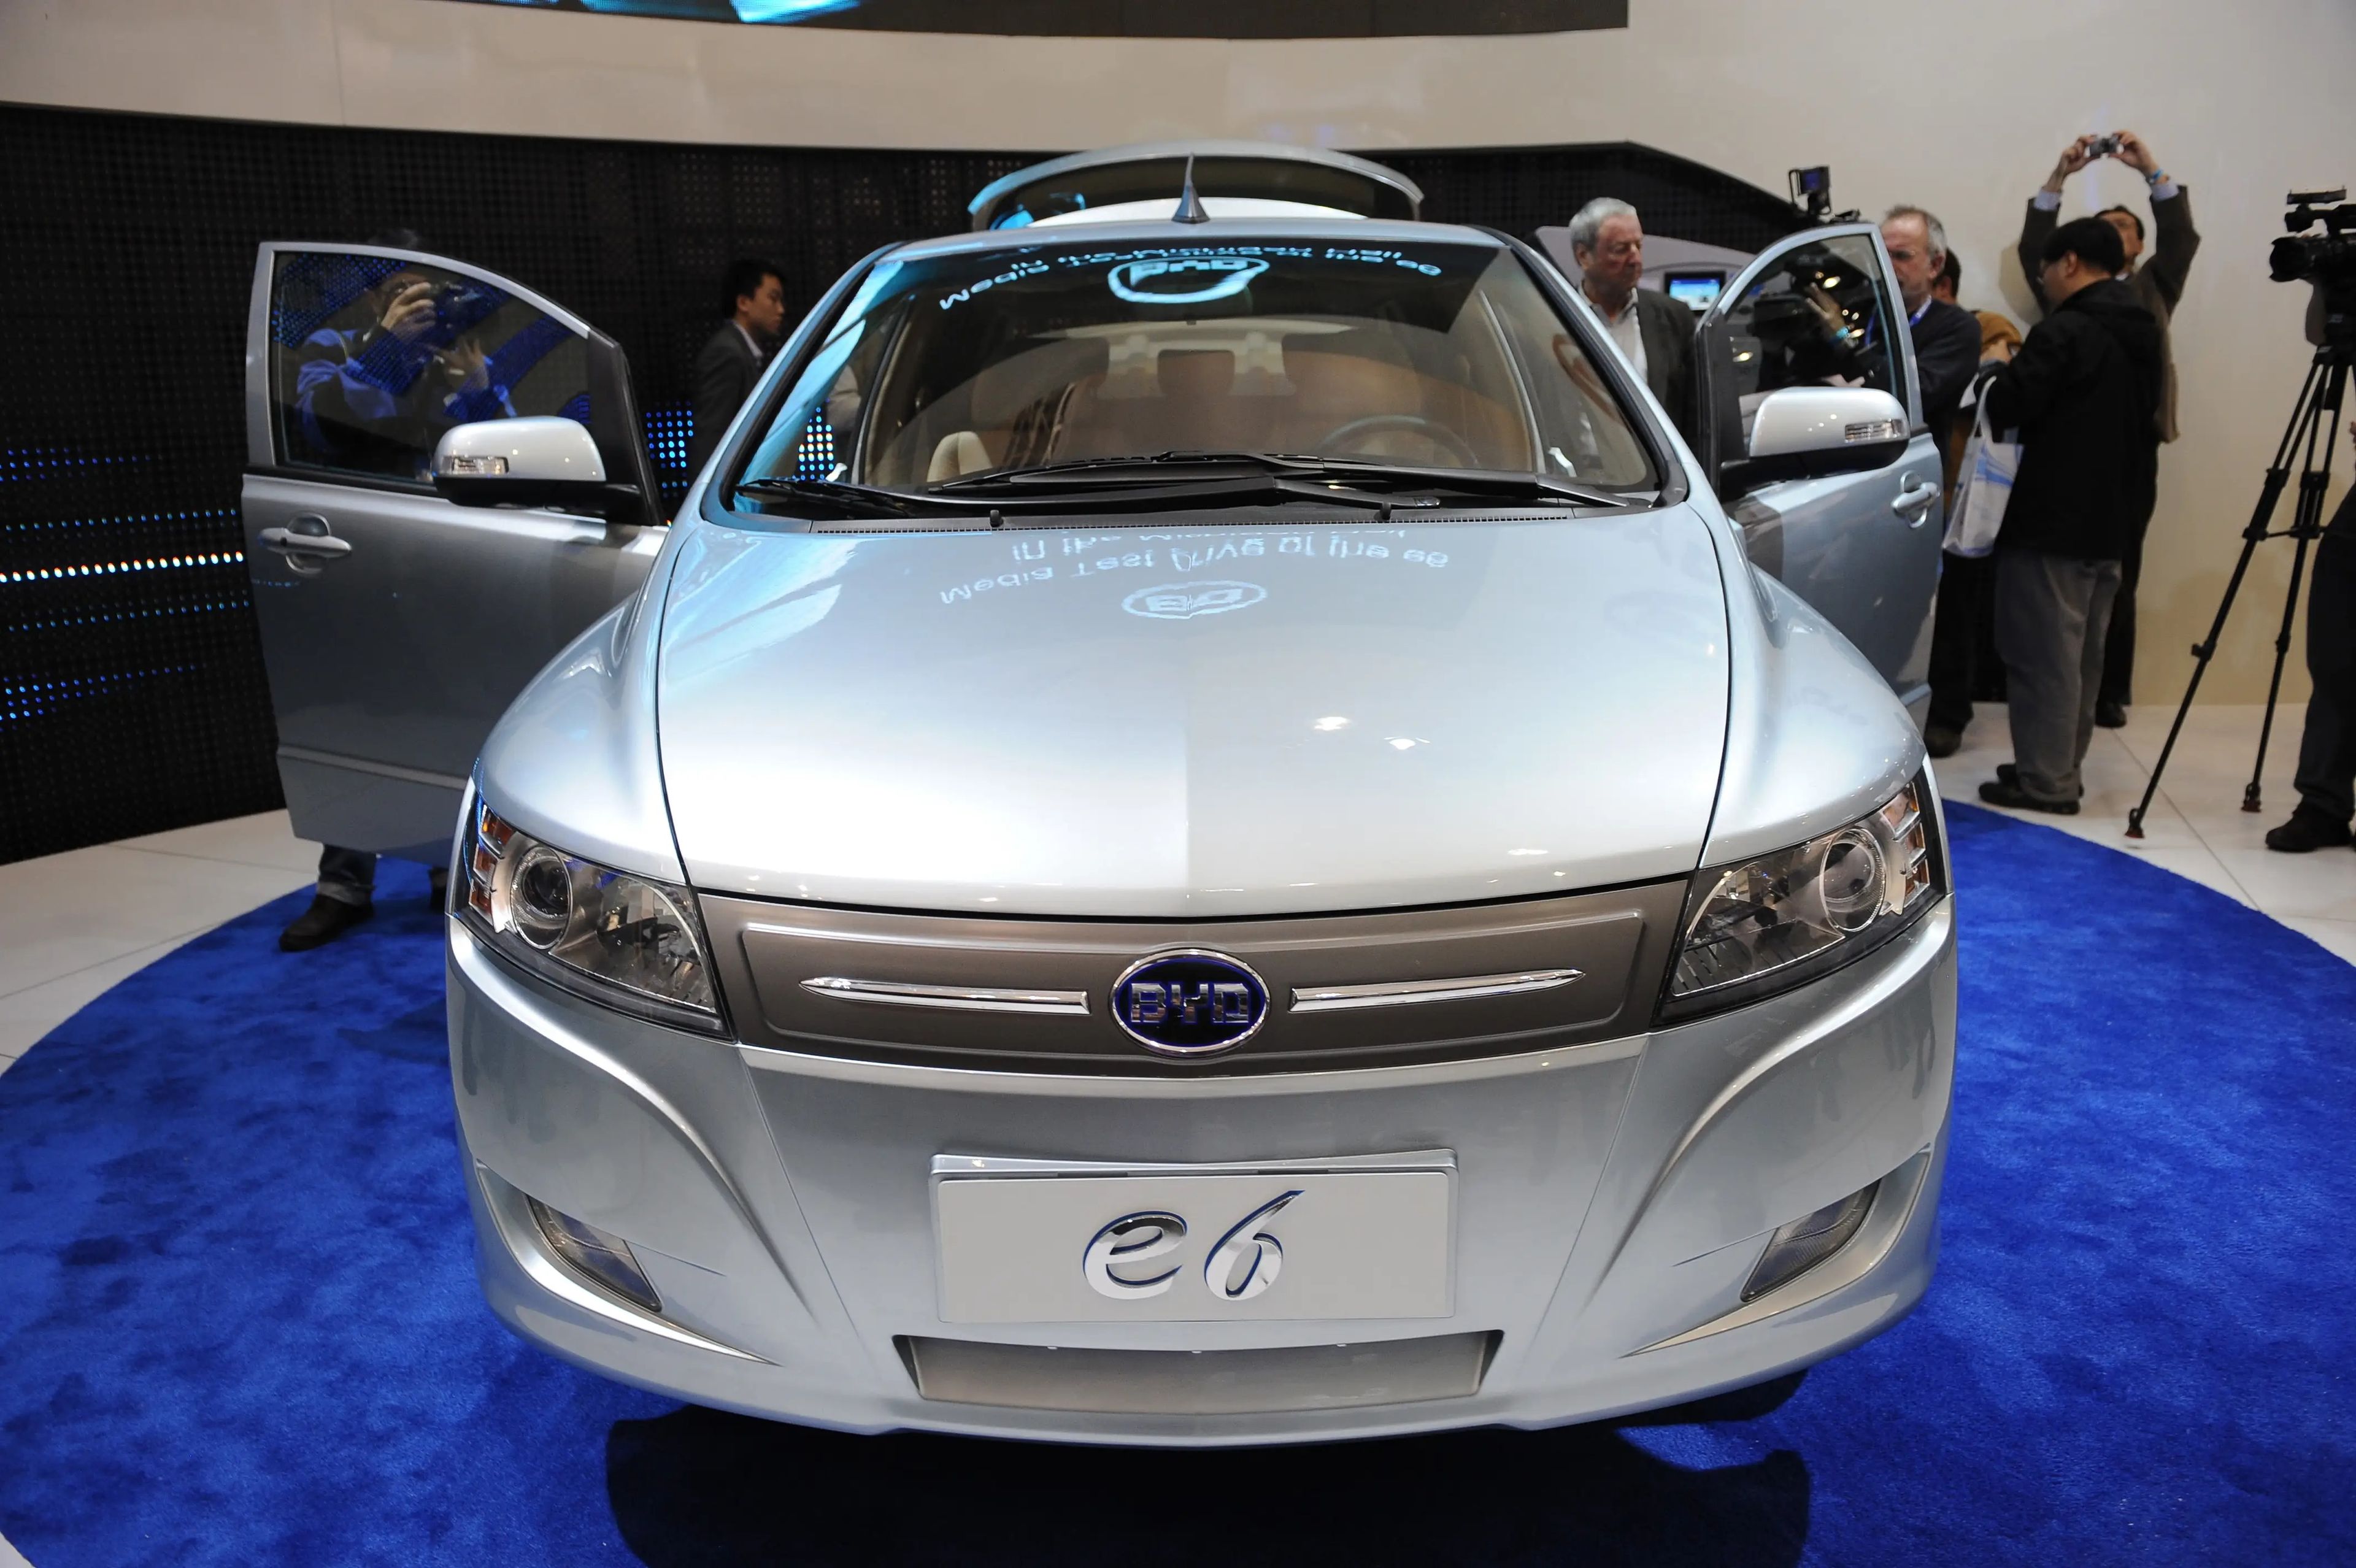 El coche eléctrico chino BYD E6 se exhibe durante el Salón Internacional del Automóvil de Norteamérica 2010, el 12 de enero de 2010 en el Cobo Center de Detroit.